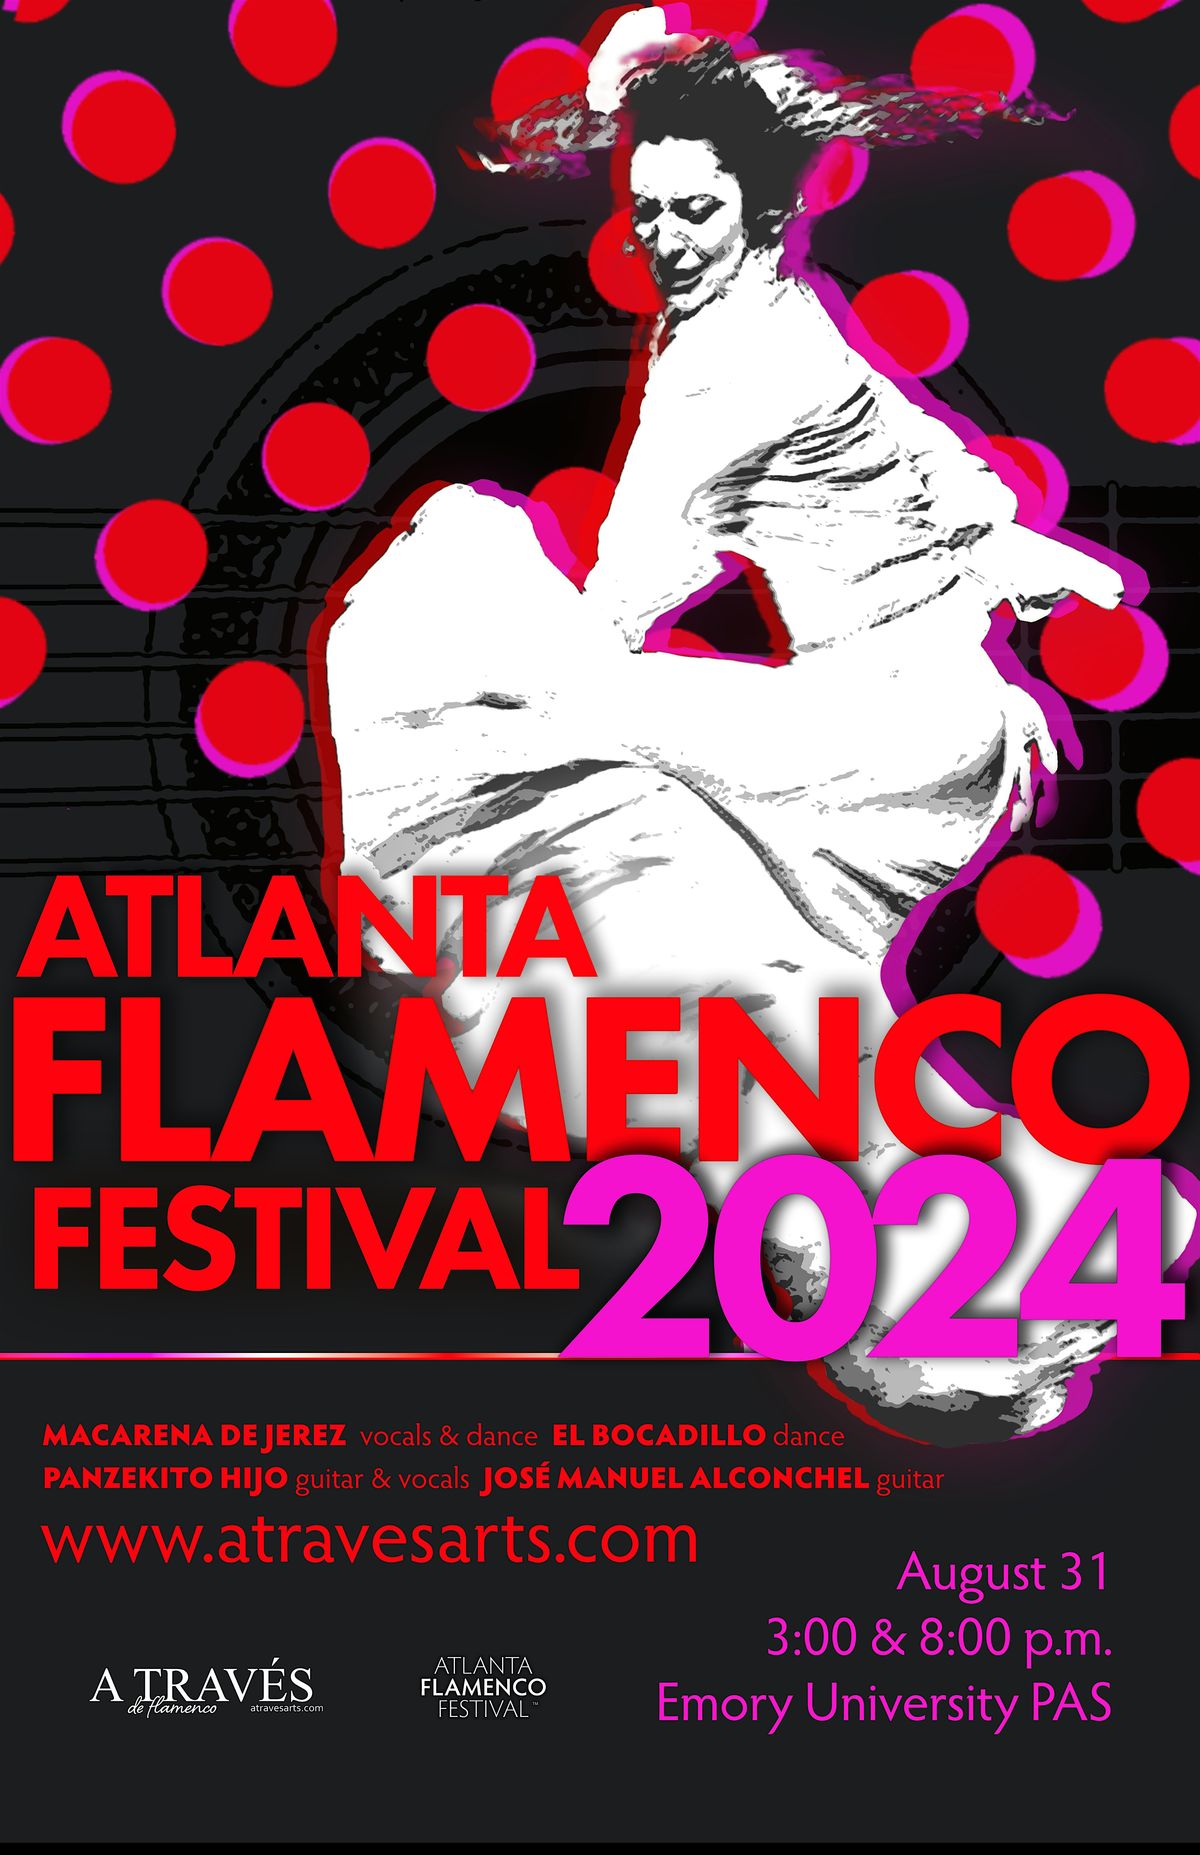 Atlanta Flamenco Festival - 3 PM - PRE-SALE TICKETS